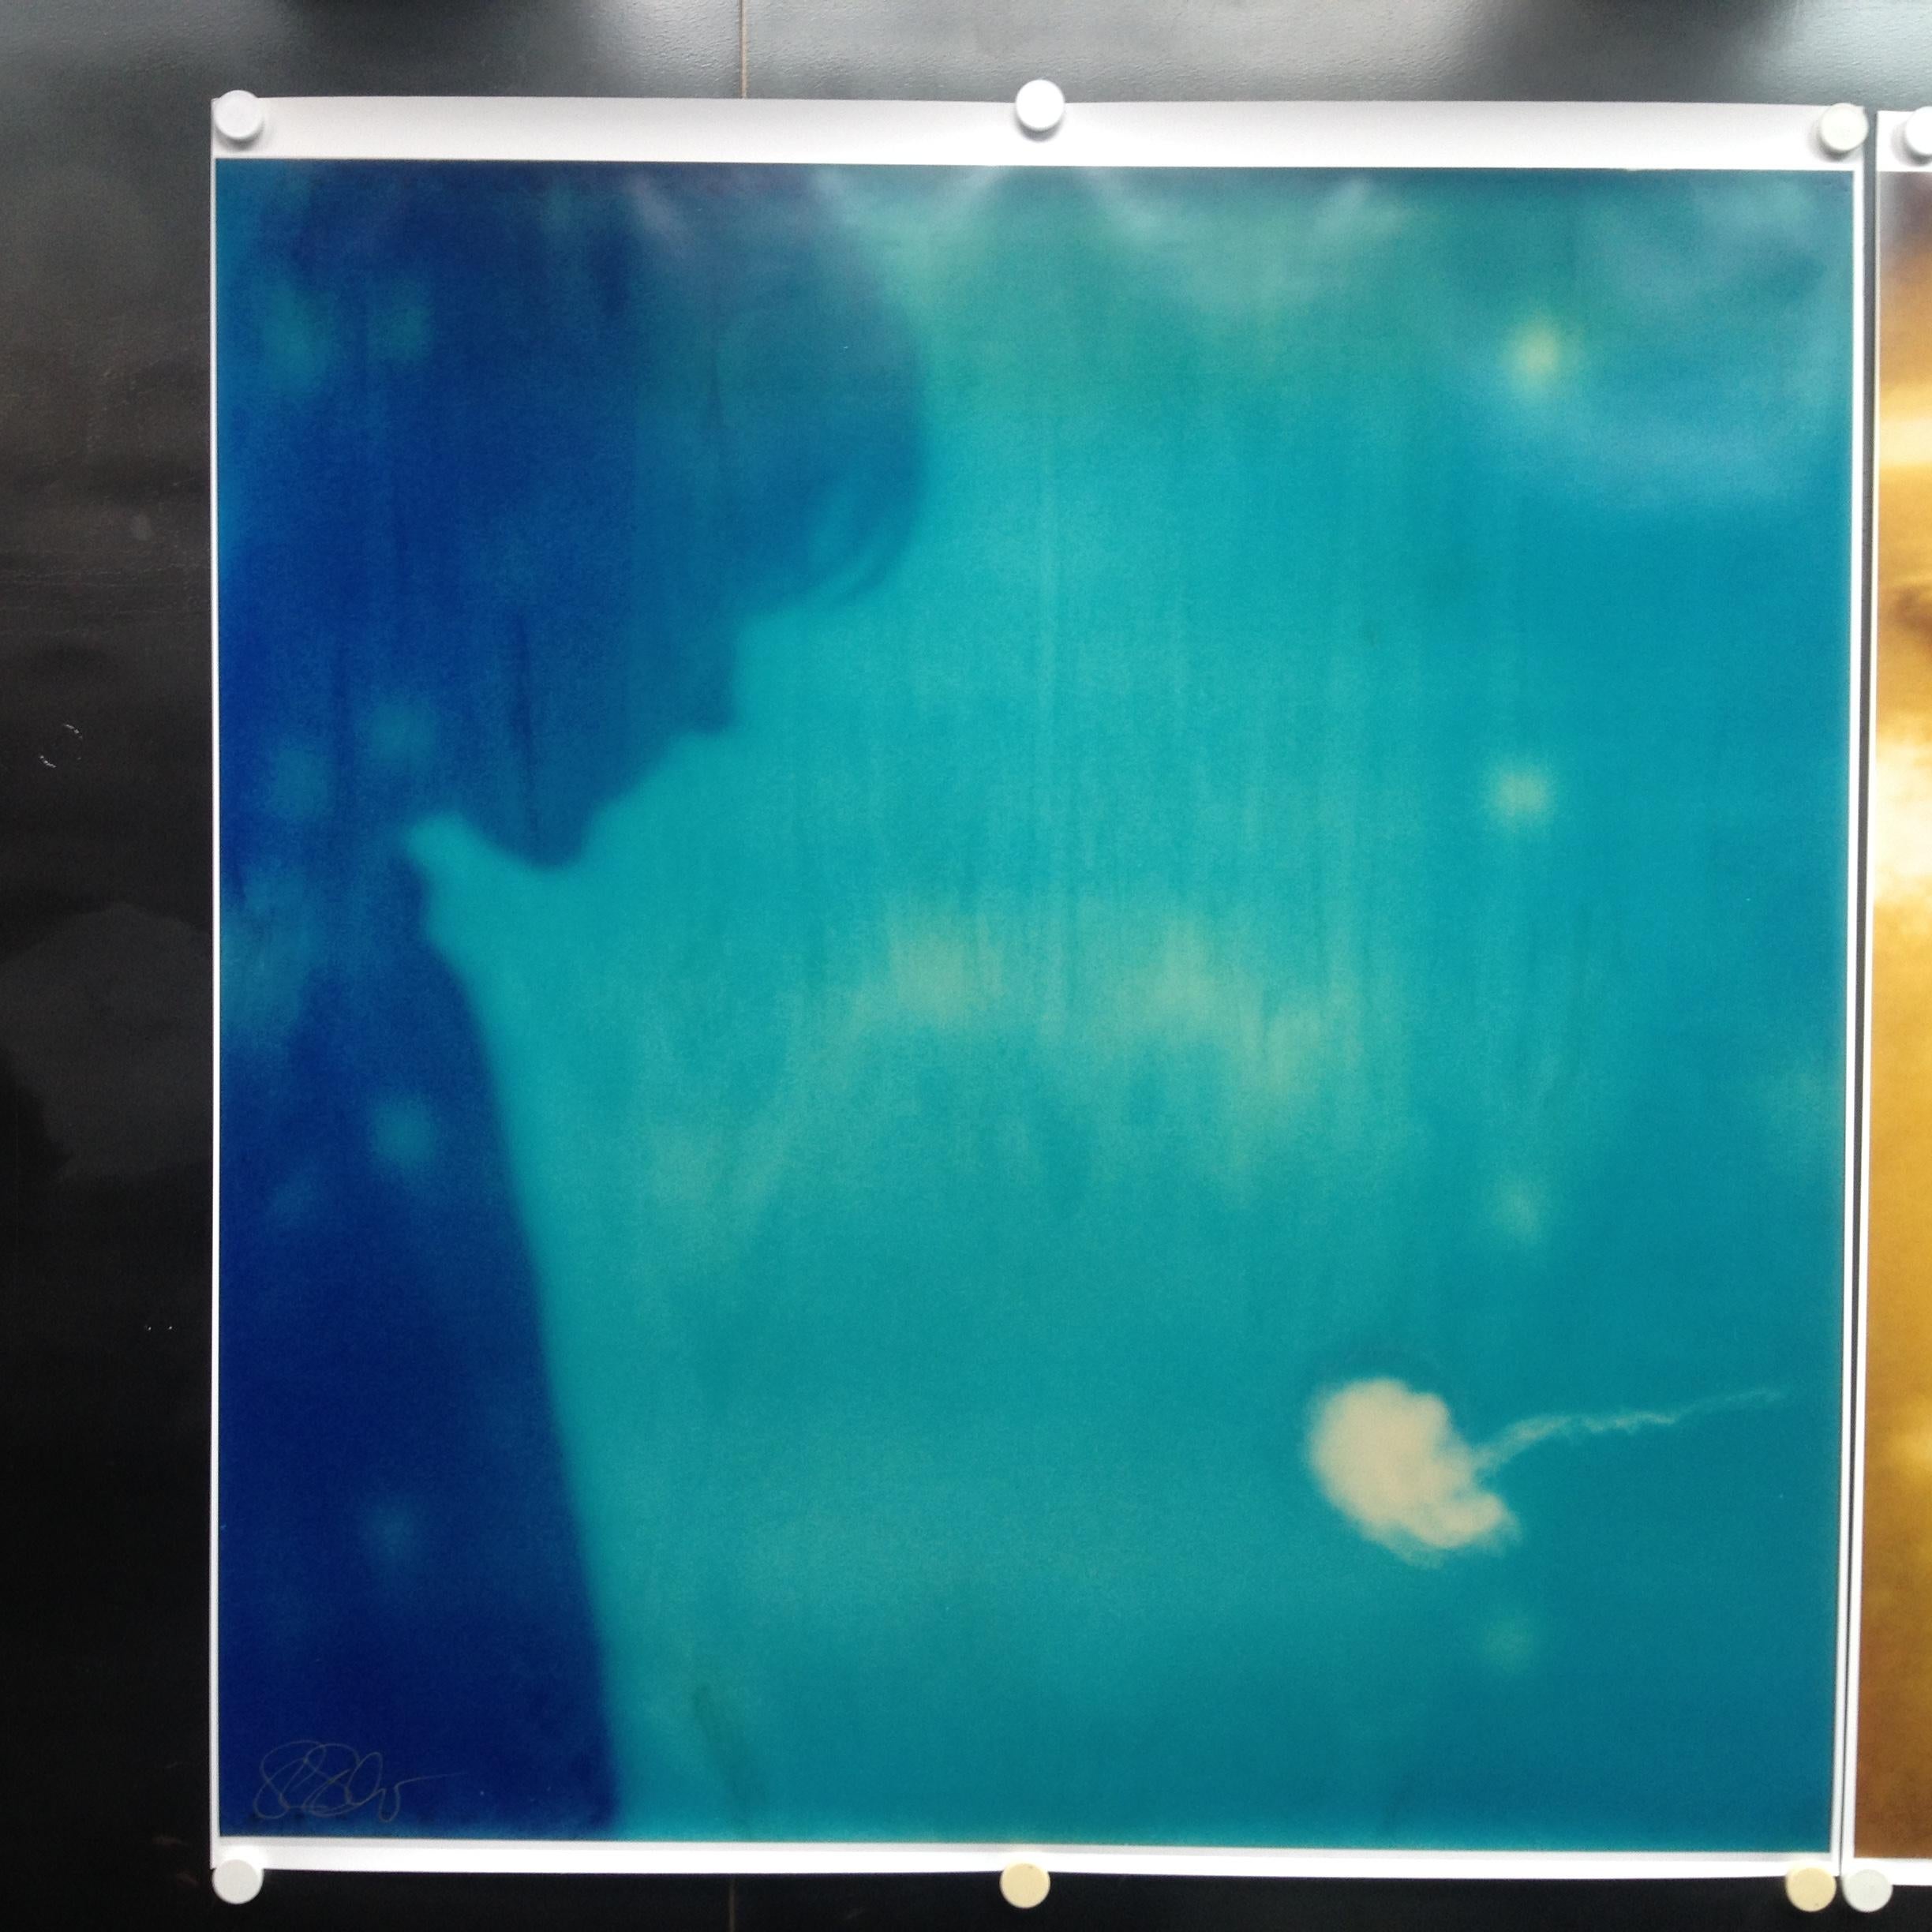 Henry et le poisson gelé'(HENRY) avec Ryan Gosling - 2006

48x46cm, 
Édition de 10 exemplaires plus 2 épreuves d'artiste.
C-print d'archives, basé sur le Polaroid. 
Label et certificat de signature. 
Artistics Invenroy #5501. 
Non monté.